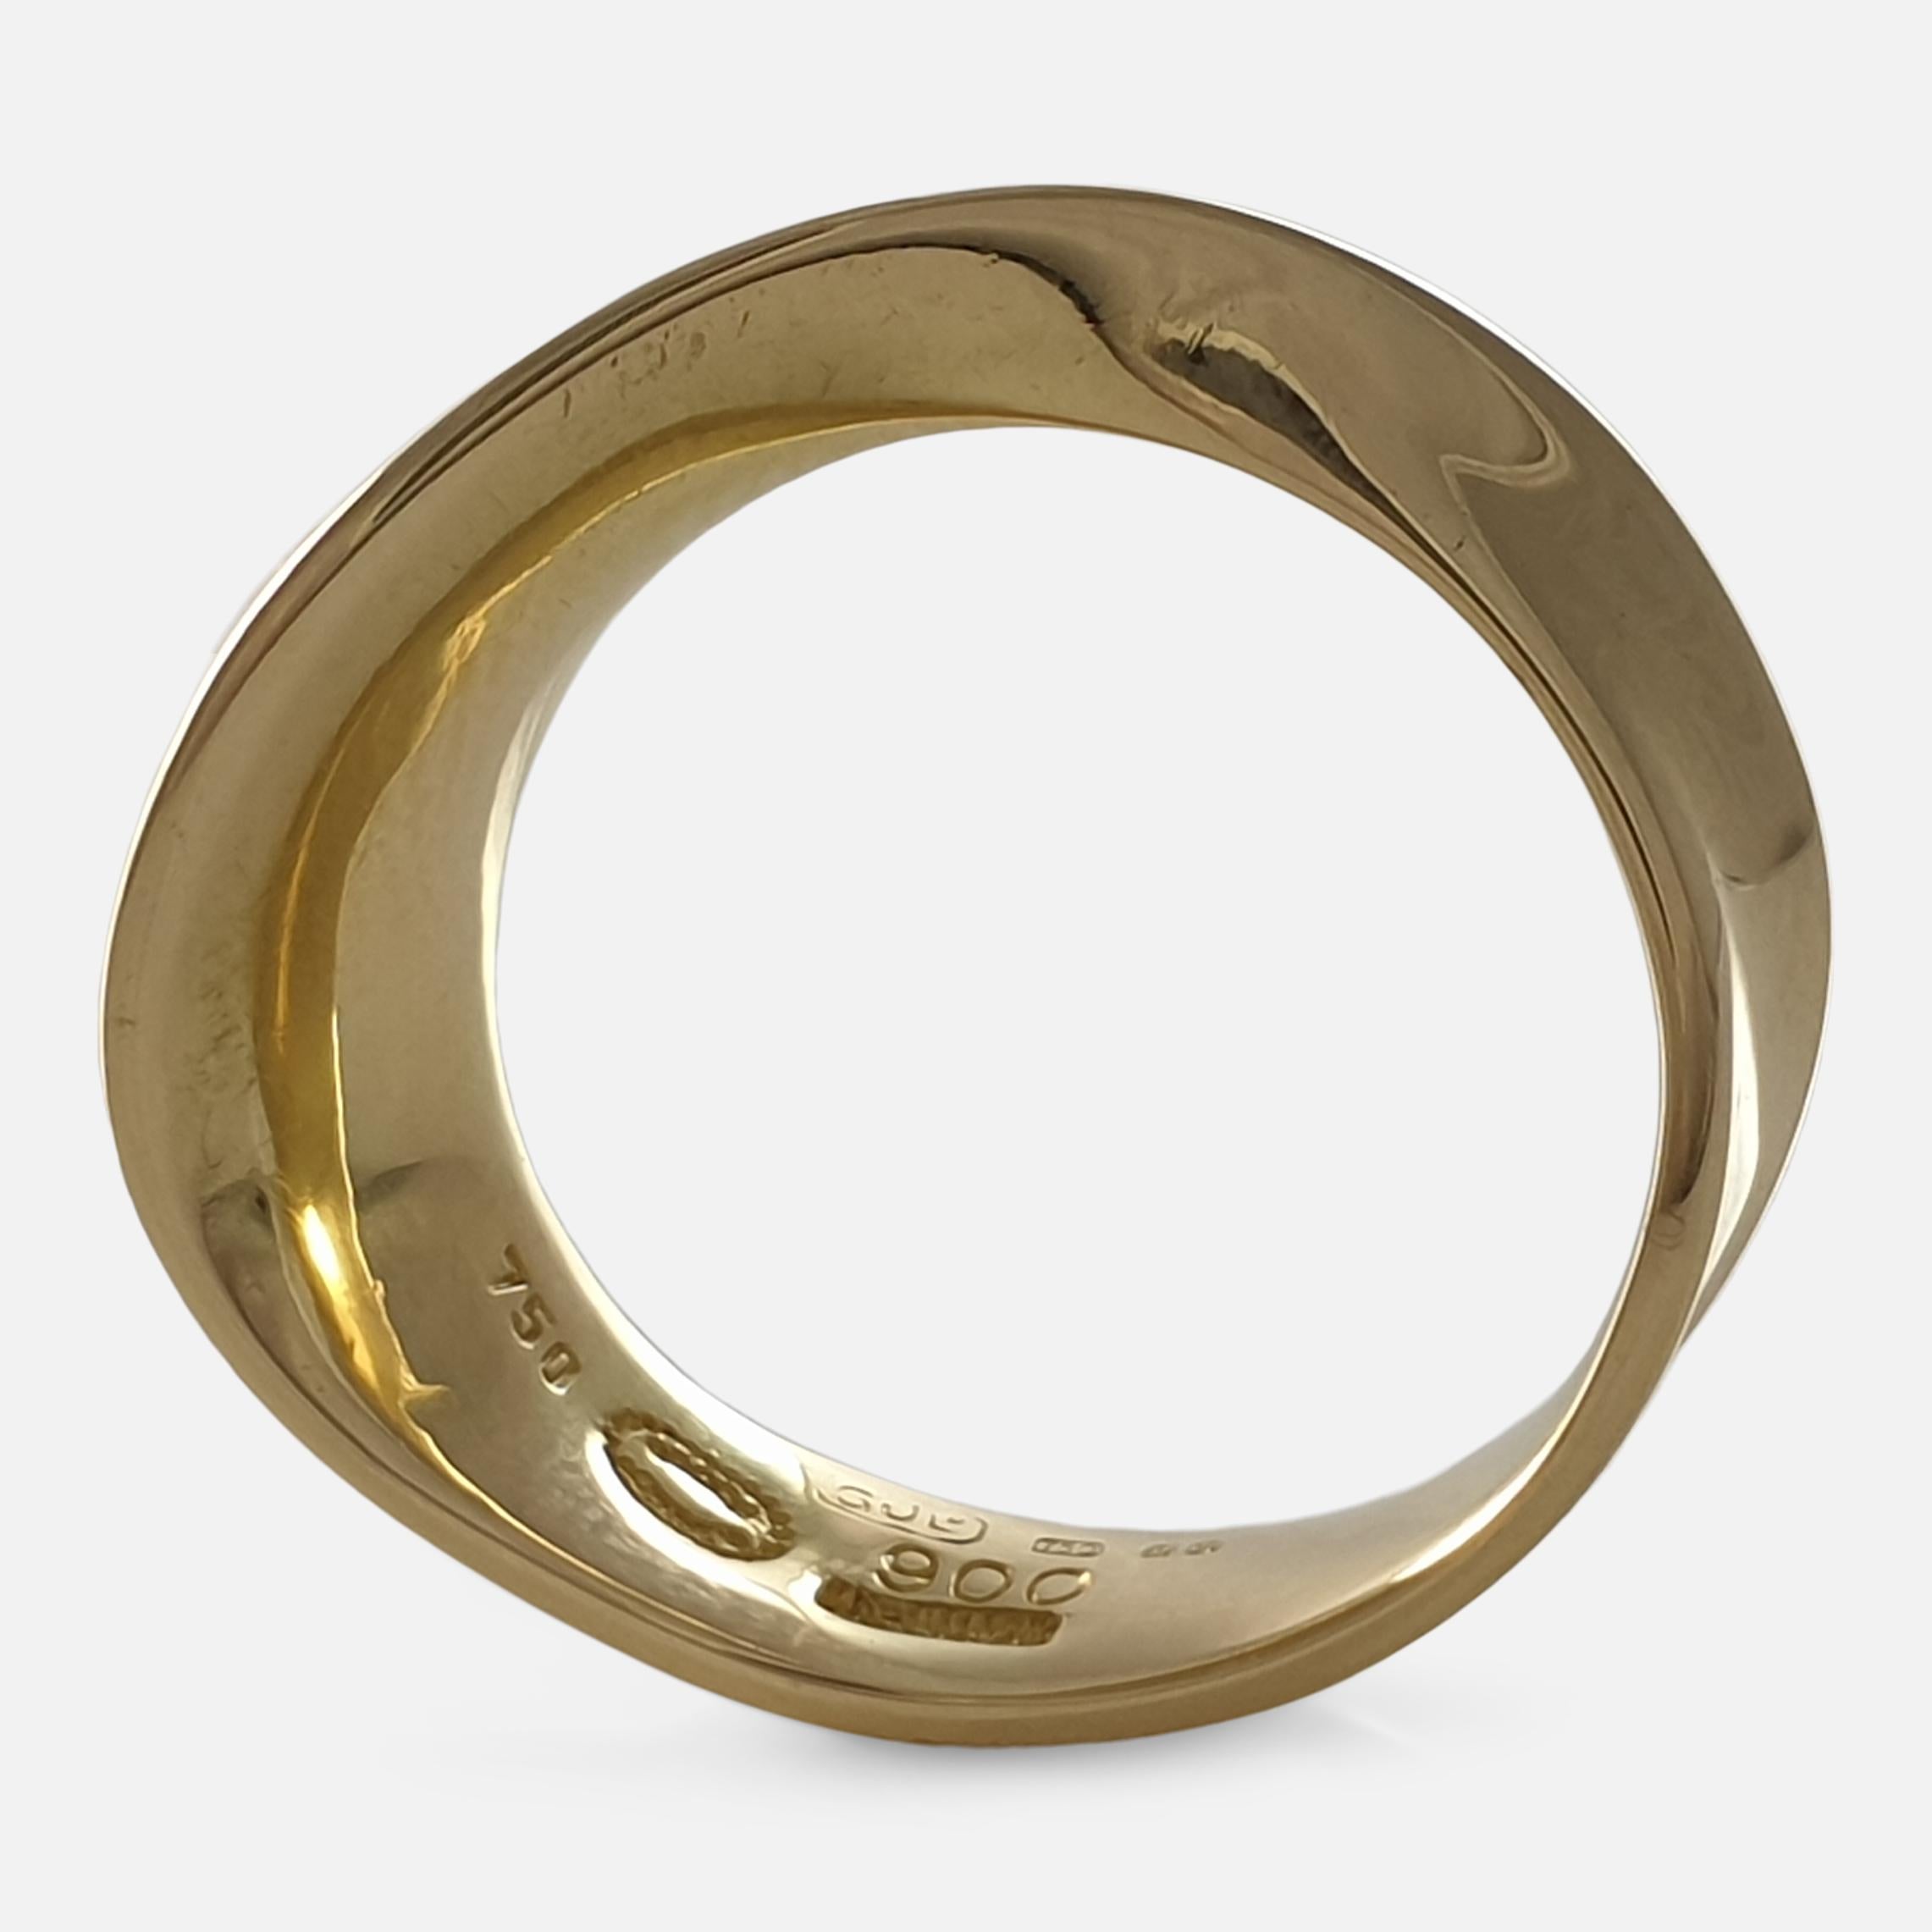 18 Carat Yellow Gold MÖBIUS Ring, No. 900, Georg Jensen 1